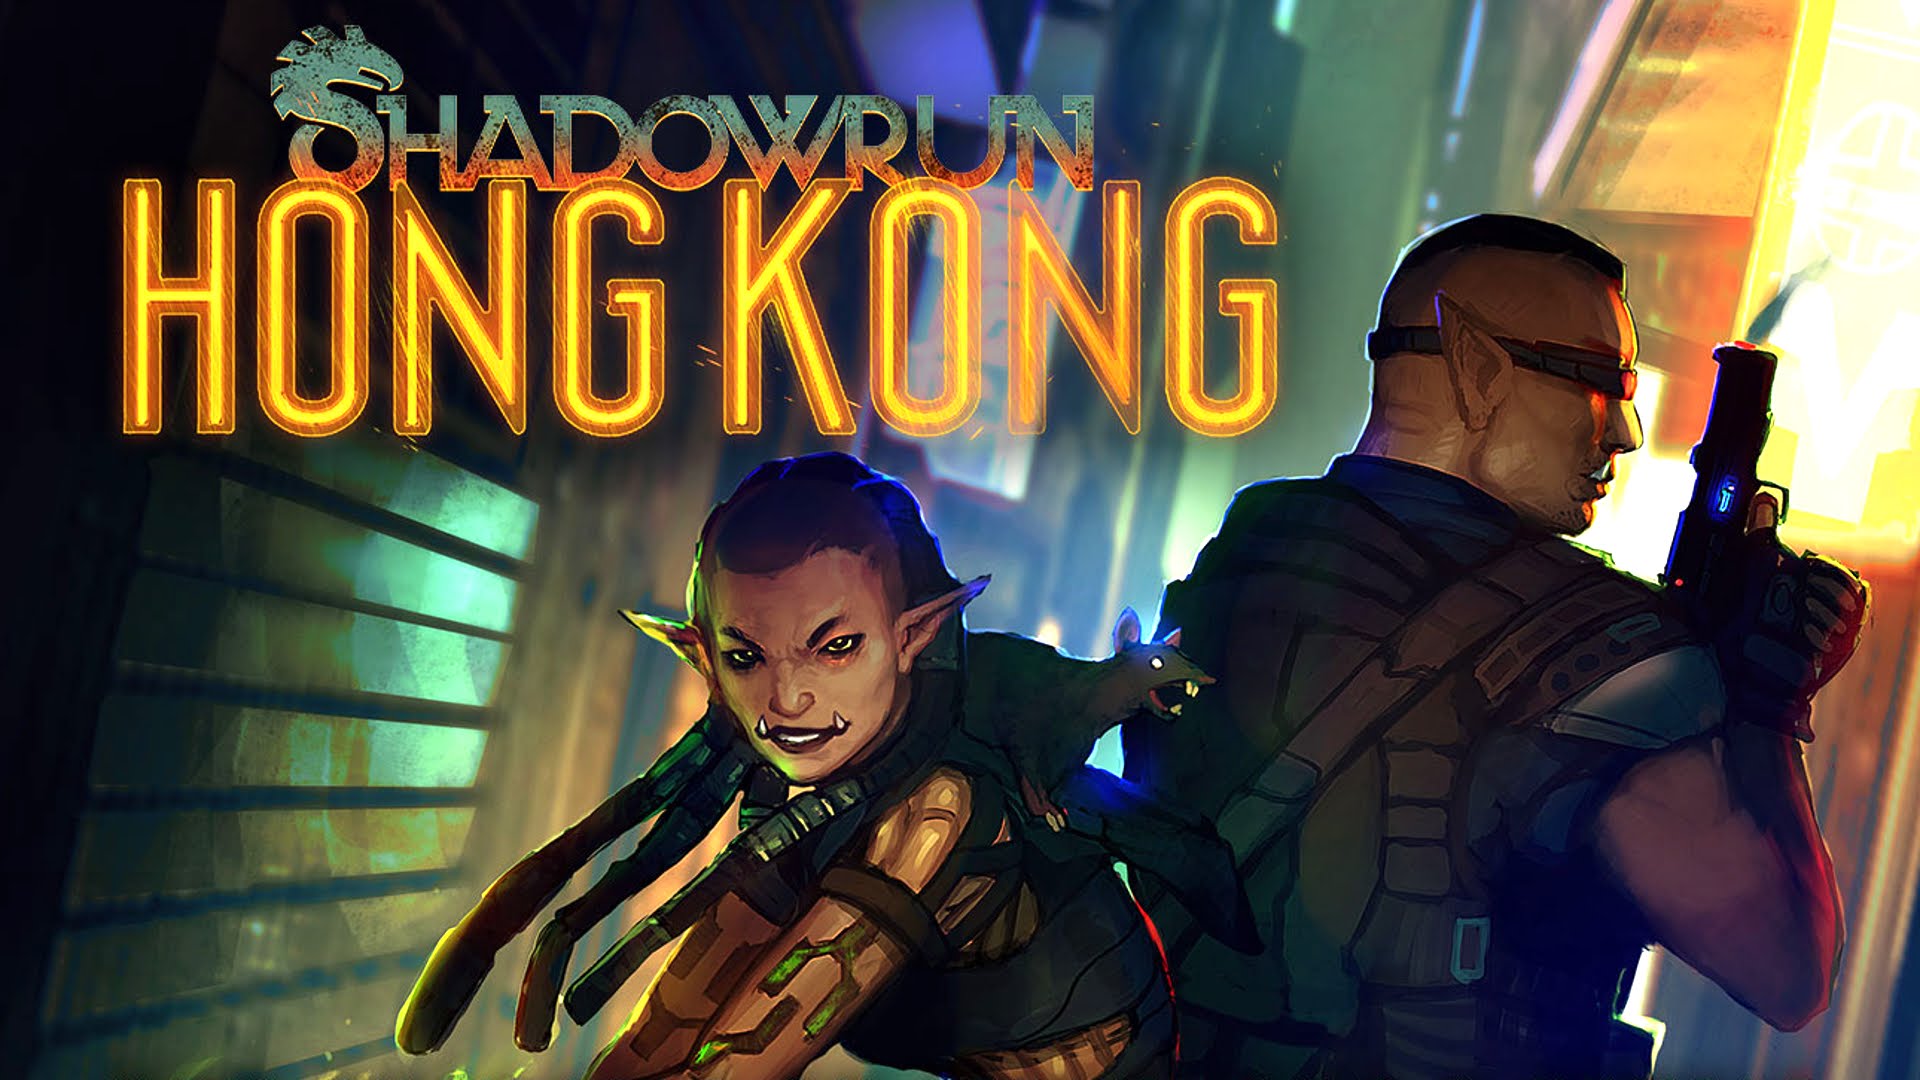 Rogues Adventure - Shadowrun Hong Kong - HD Wallpaper 